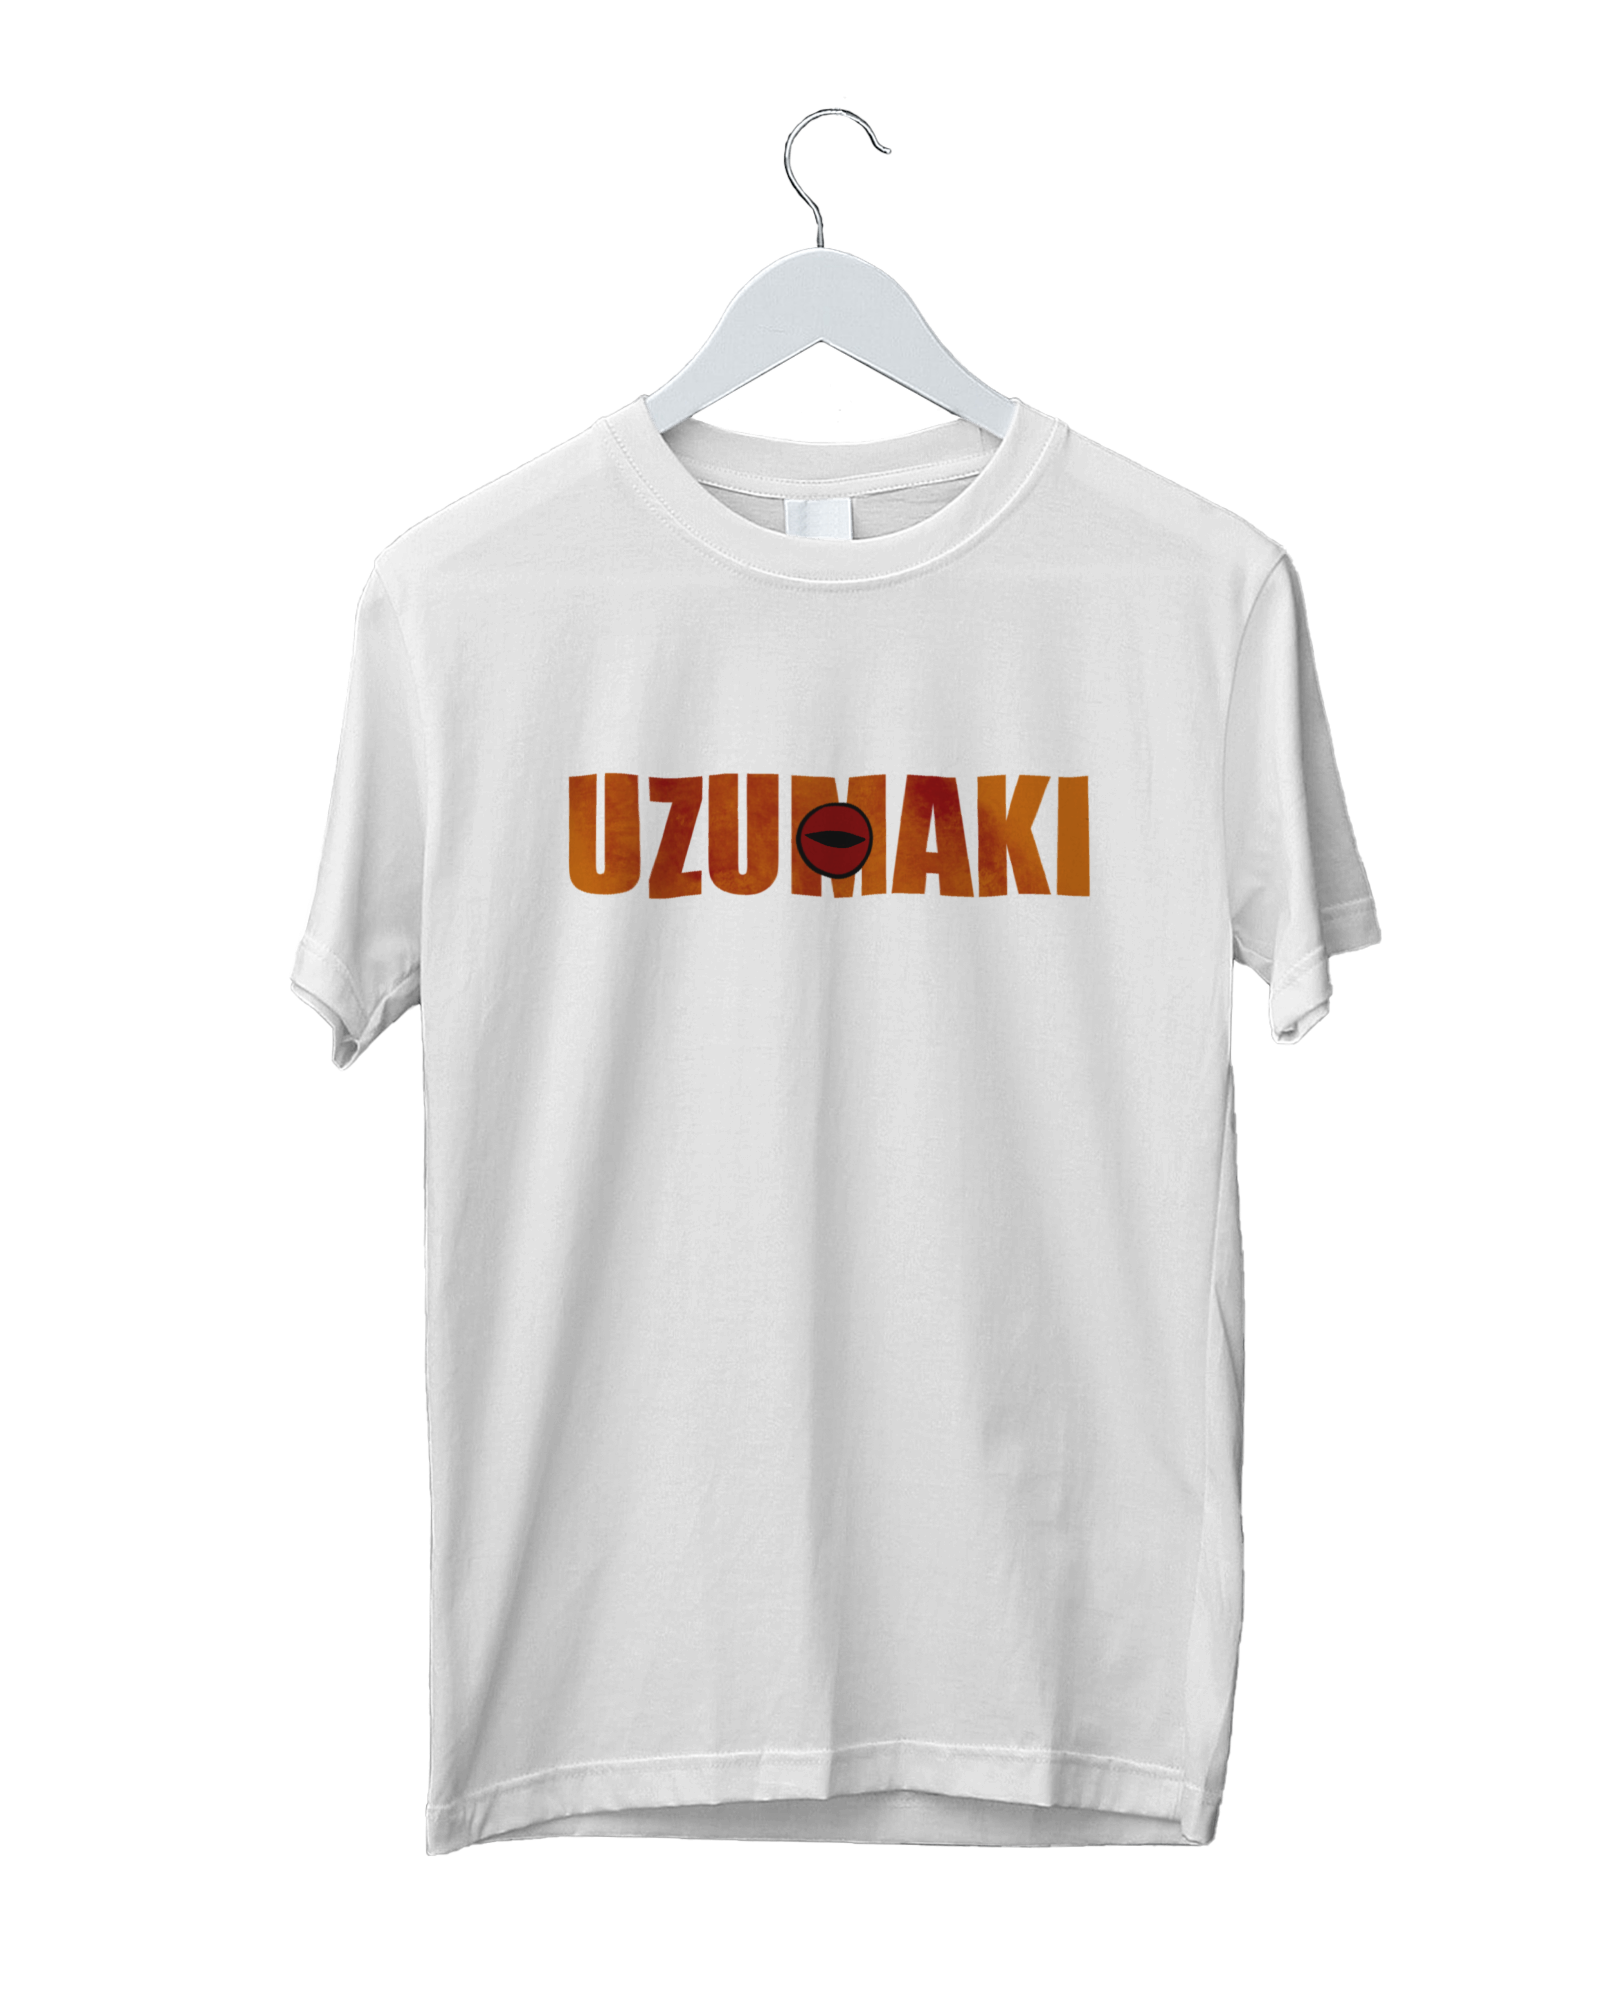 Naruto Classic Naruto Uzumaki & Kanji Men's White Long Sleeve Shirt-3XL